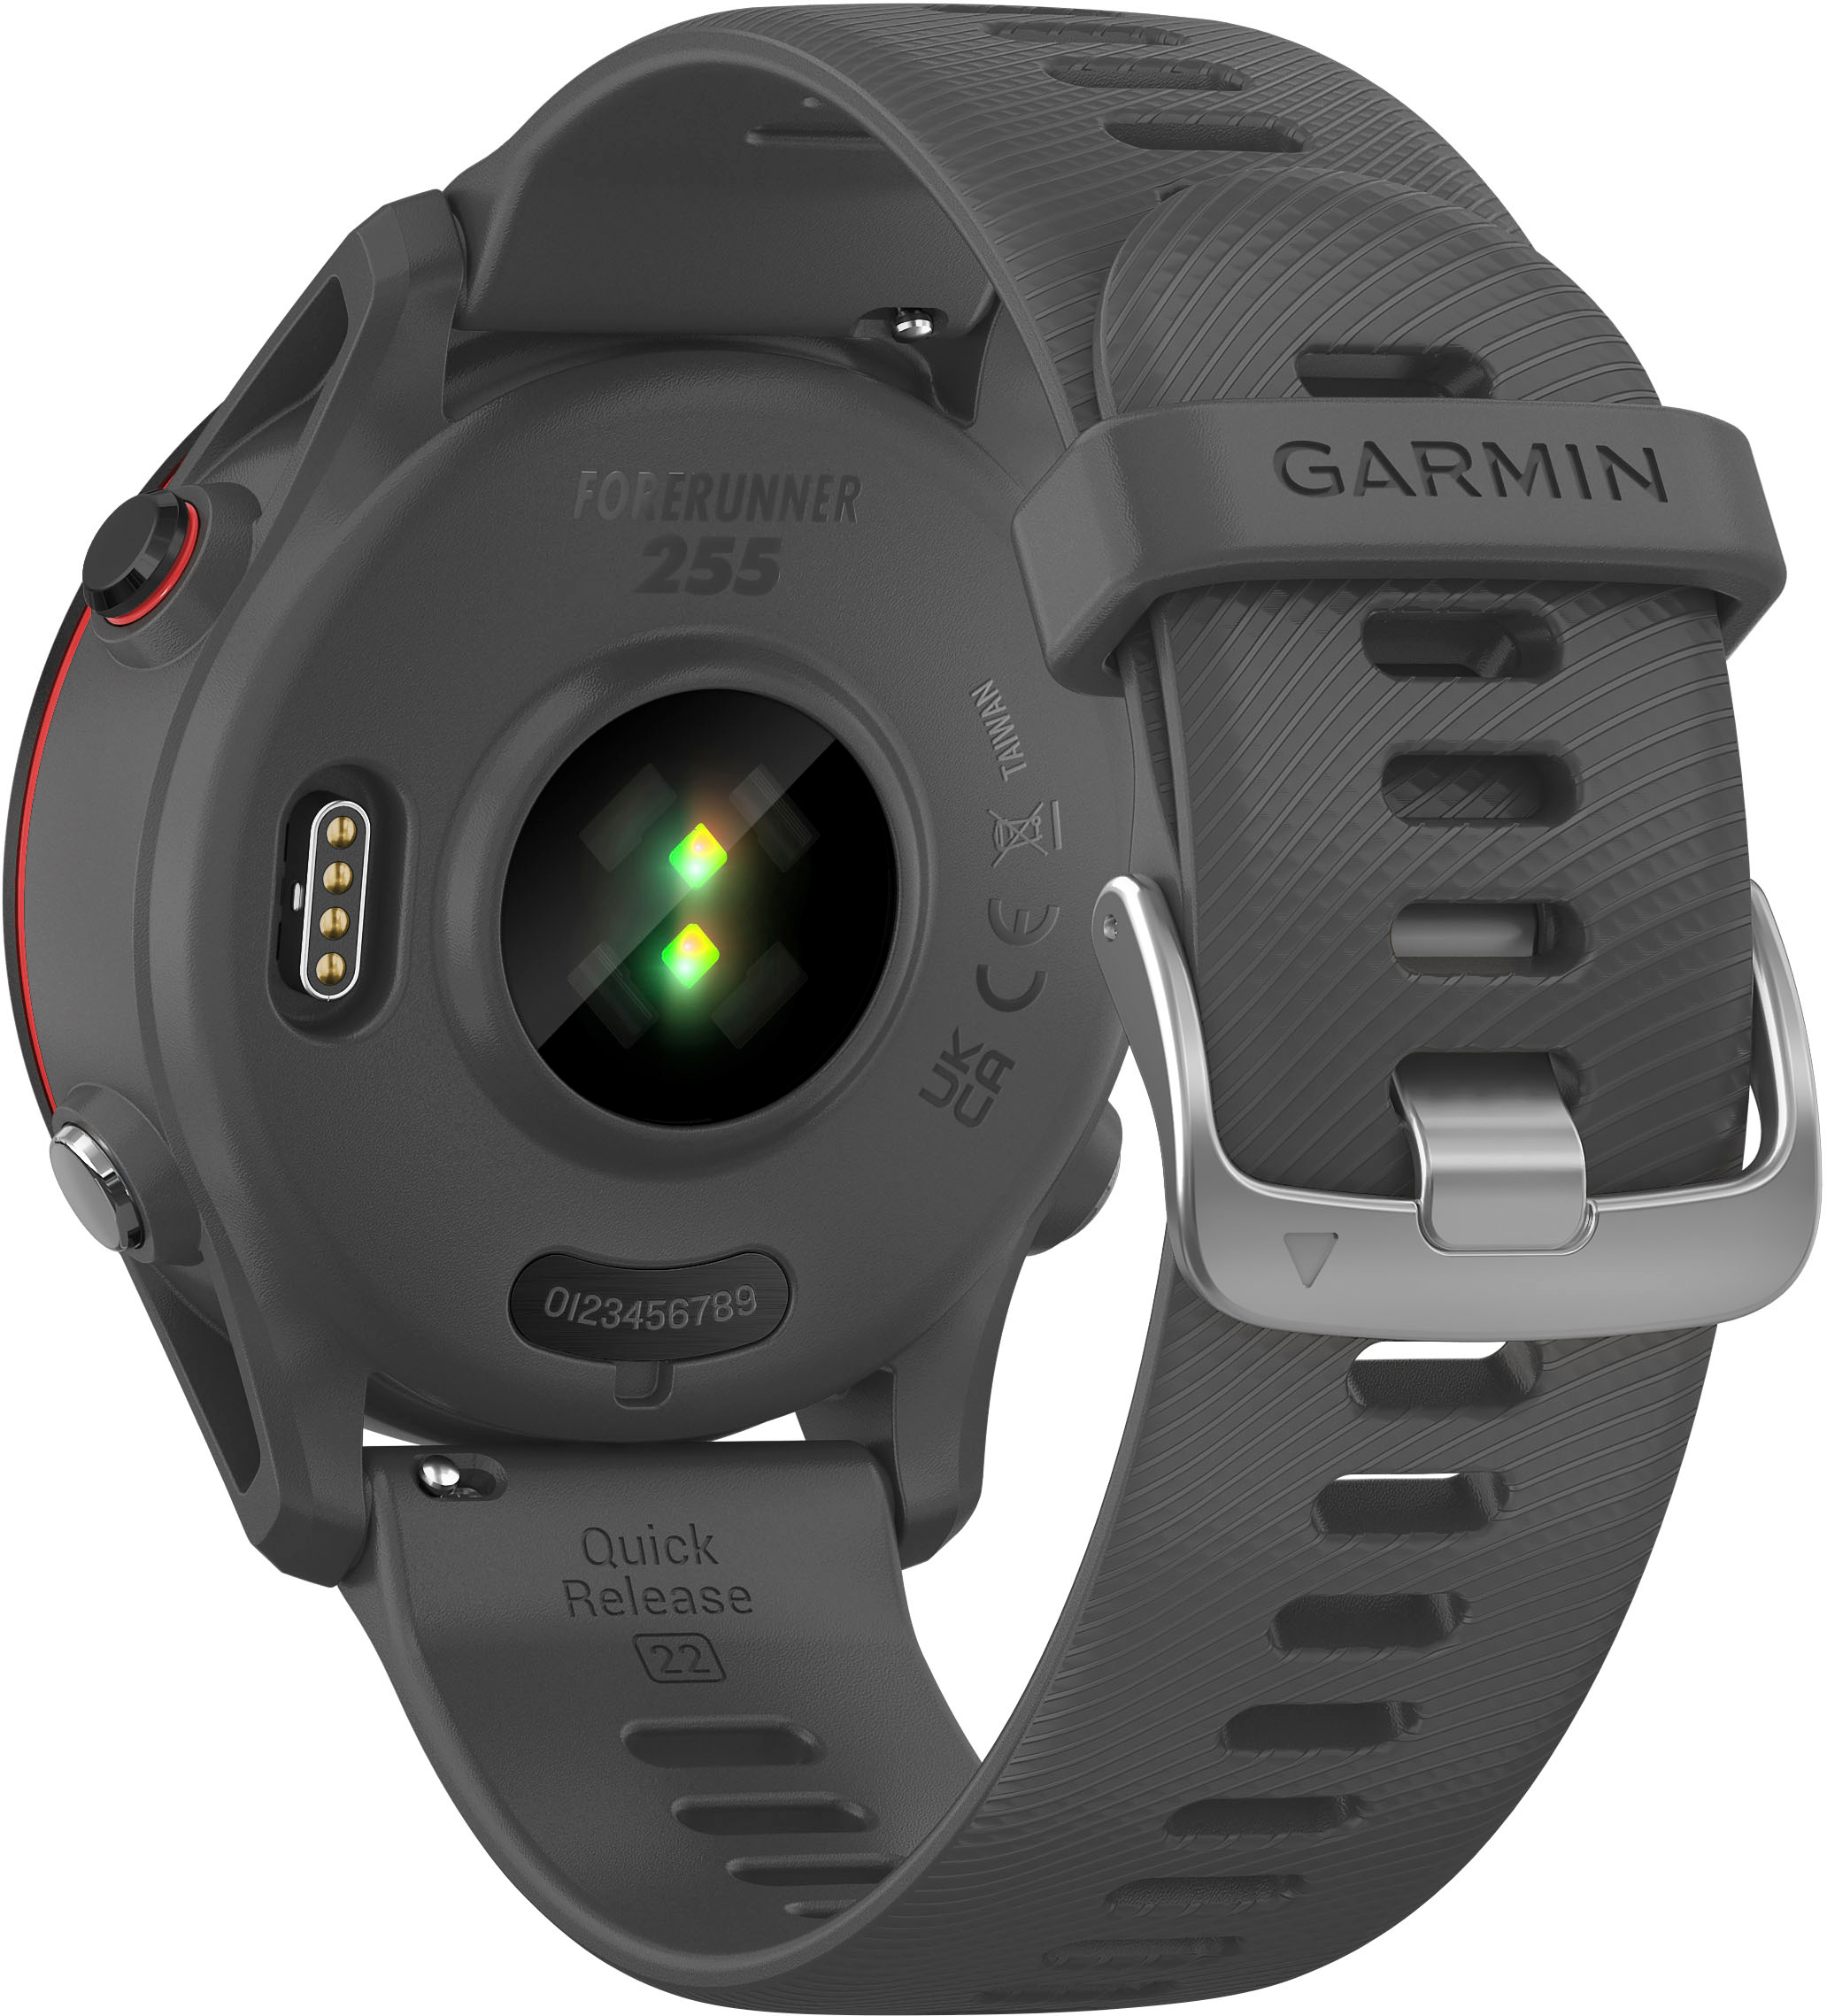 Back View: Garmin - Forerunner 255 GPS Smartwatch 46 mm Fiber-reinforced polymer - Slate Gray